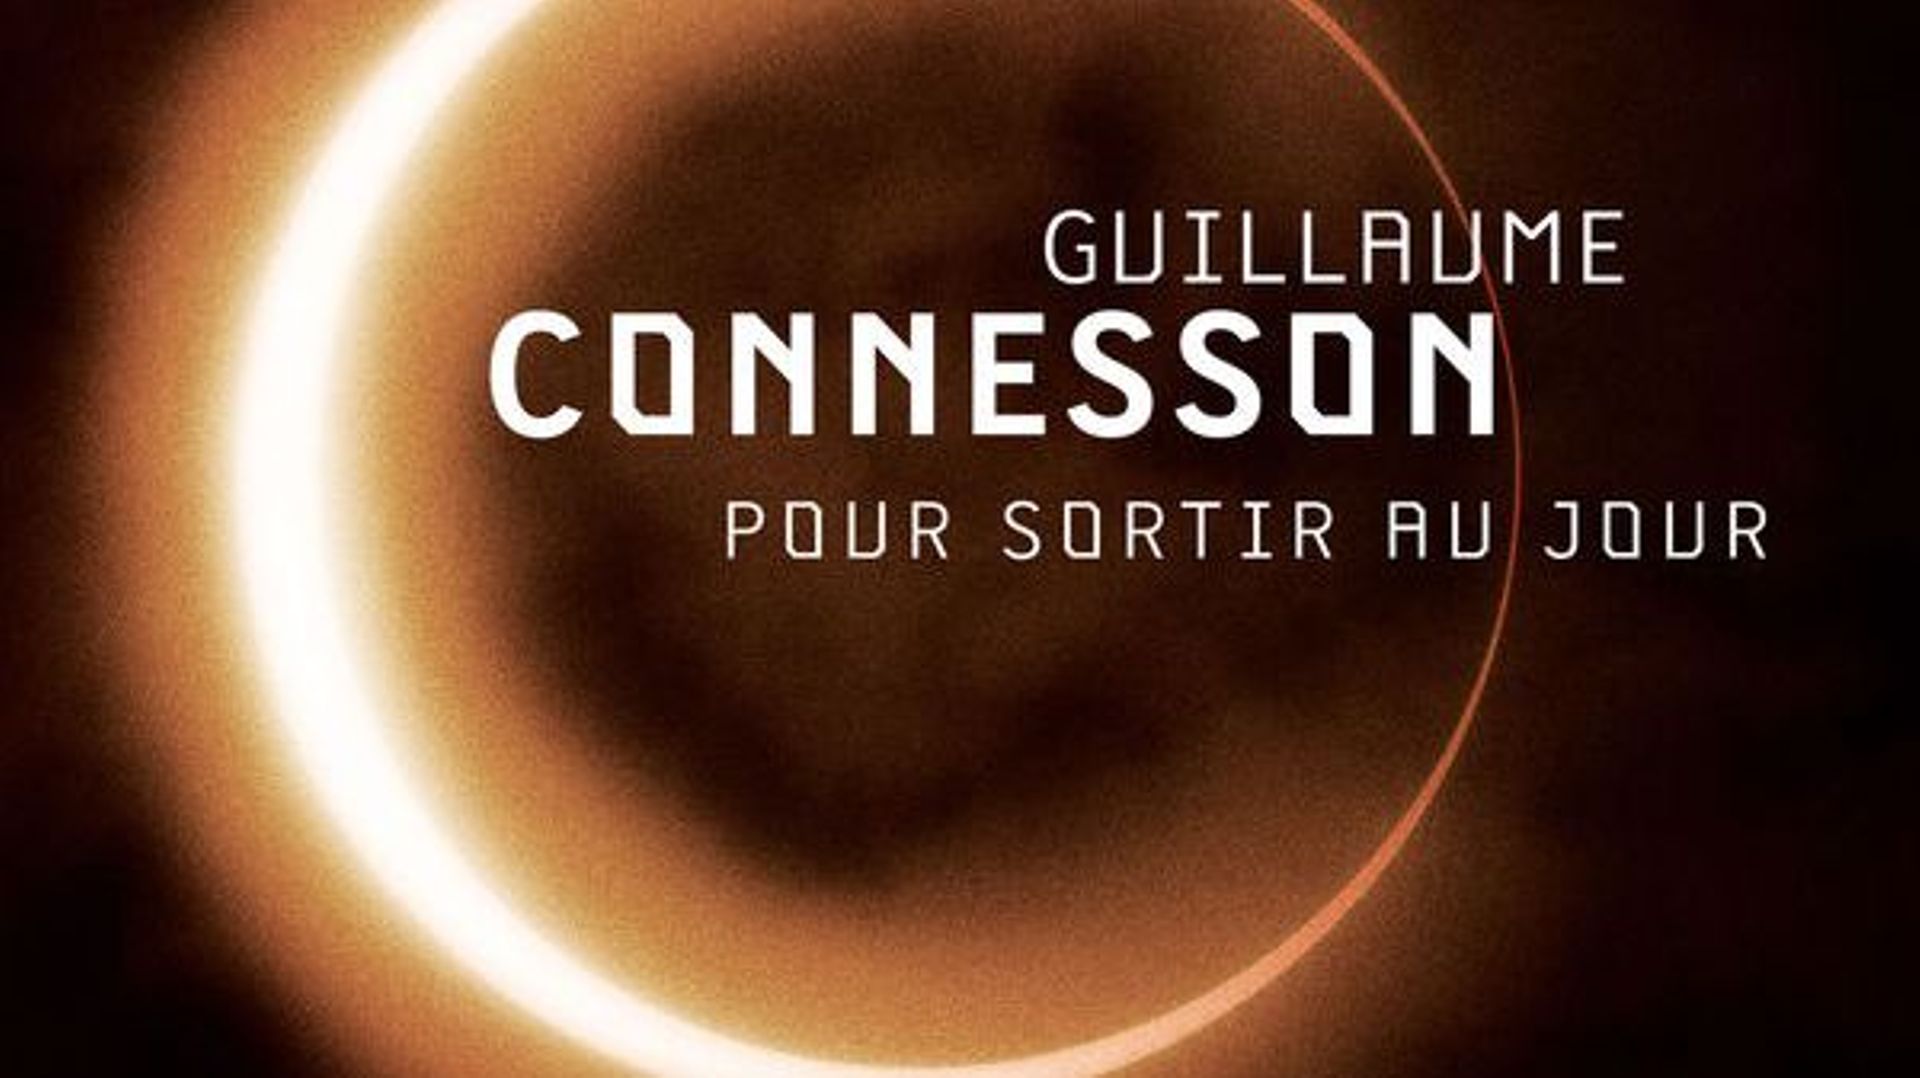 CD de la semaine : Guillaume Connesson "Pour sortir au jour" (DEUTSCHE GRAMMOPHON)